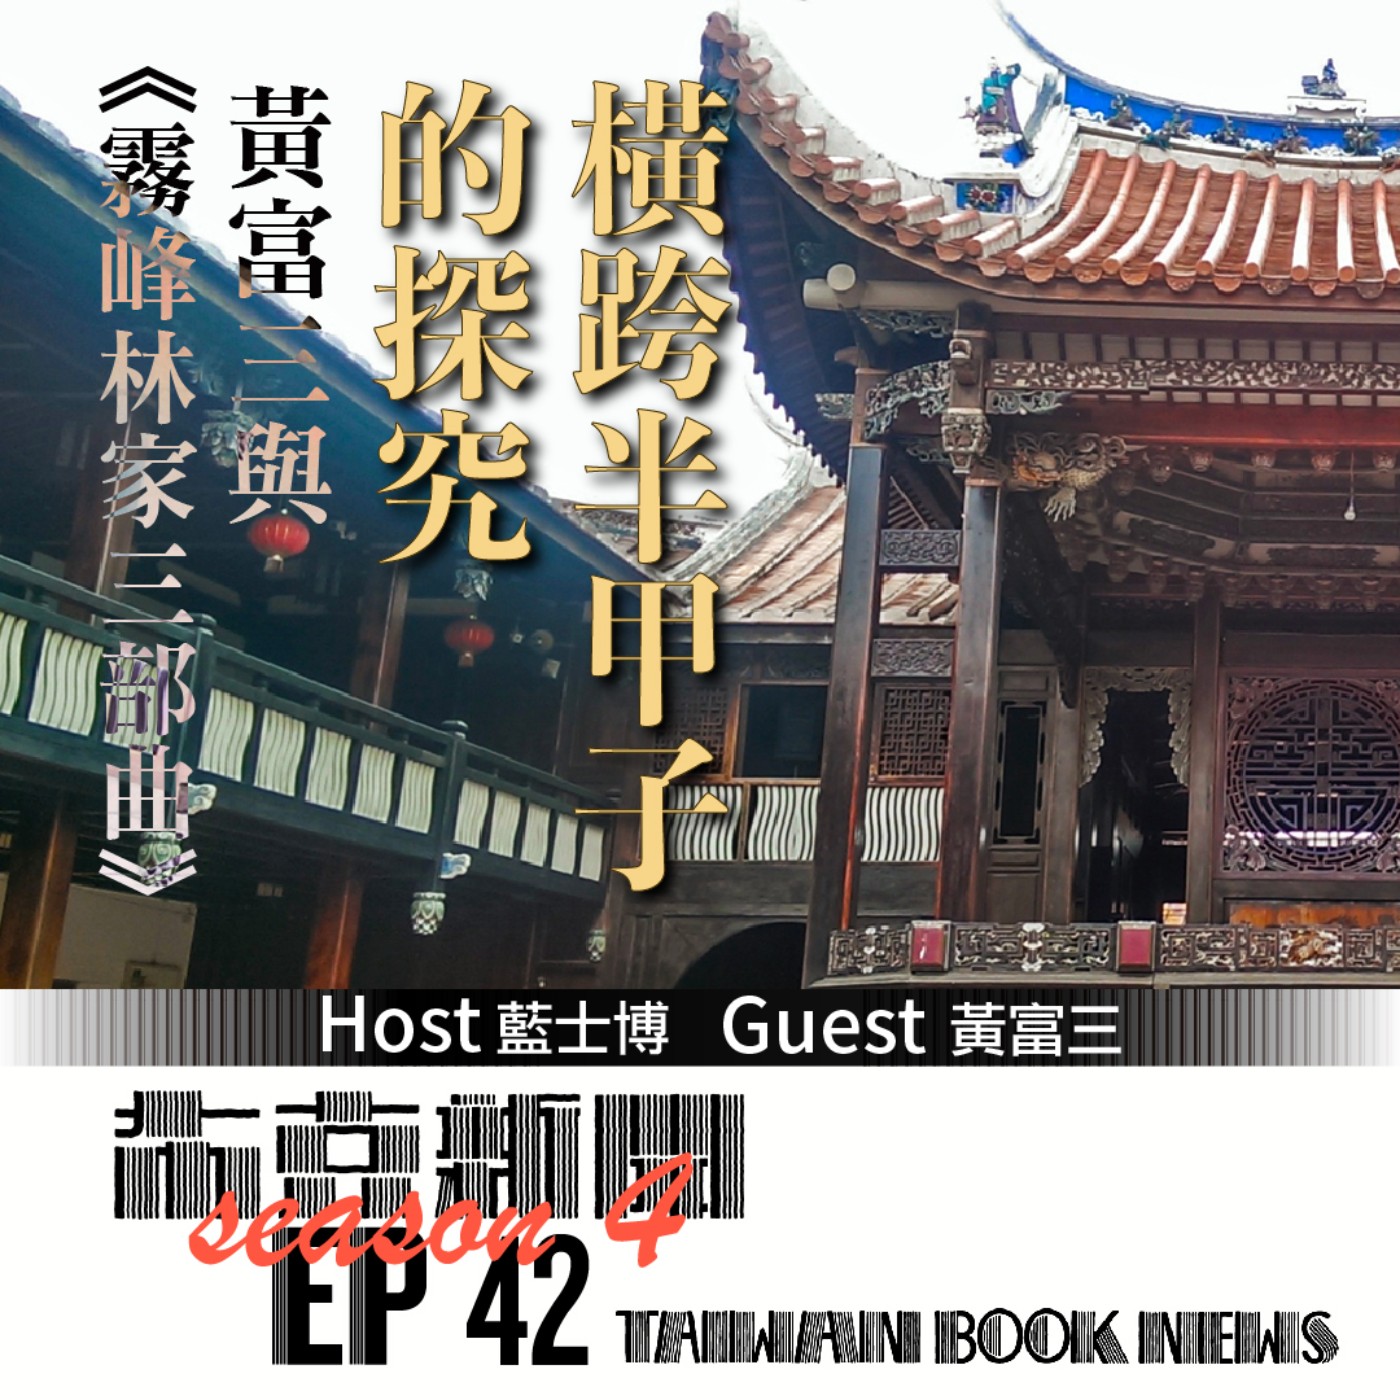 布克新聞 Taiwan Book News S4EP42：橫跨半甲子的探究，黃富三與《霧峰林家三部曲》